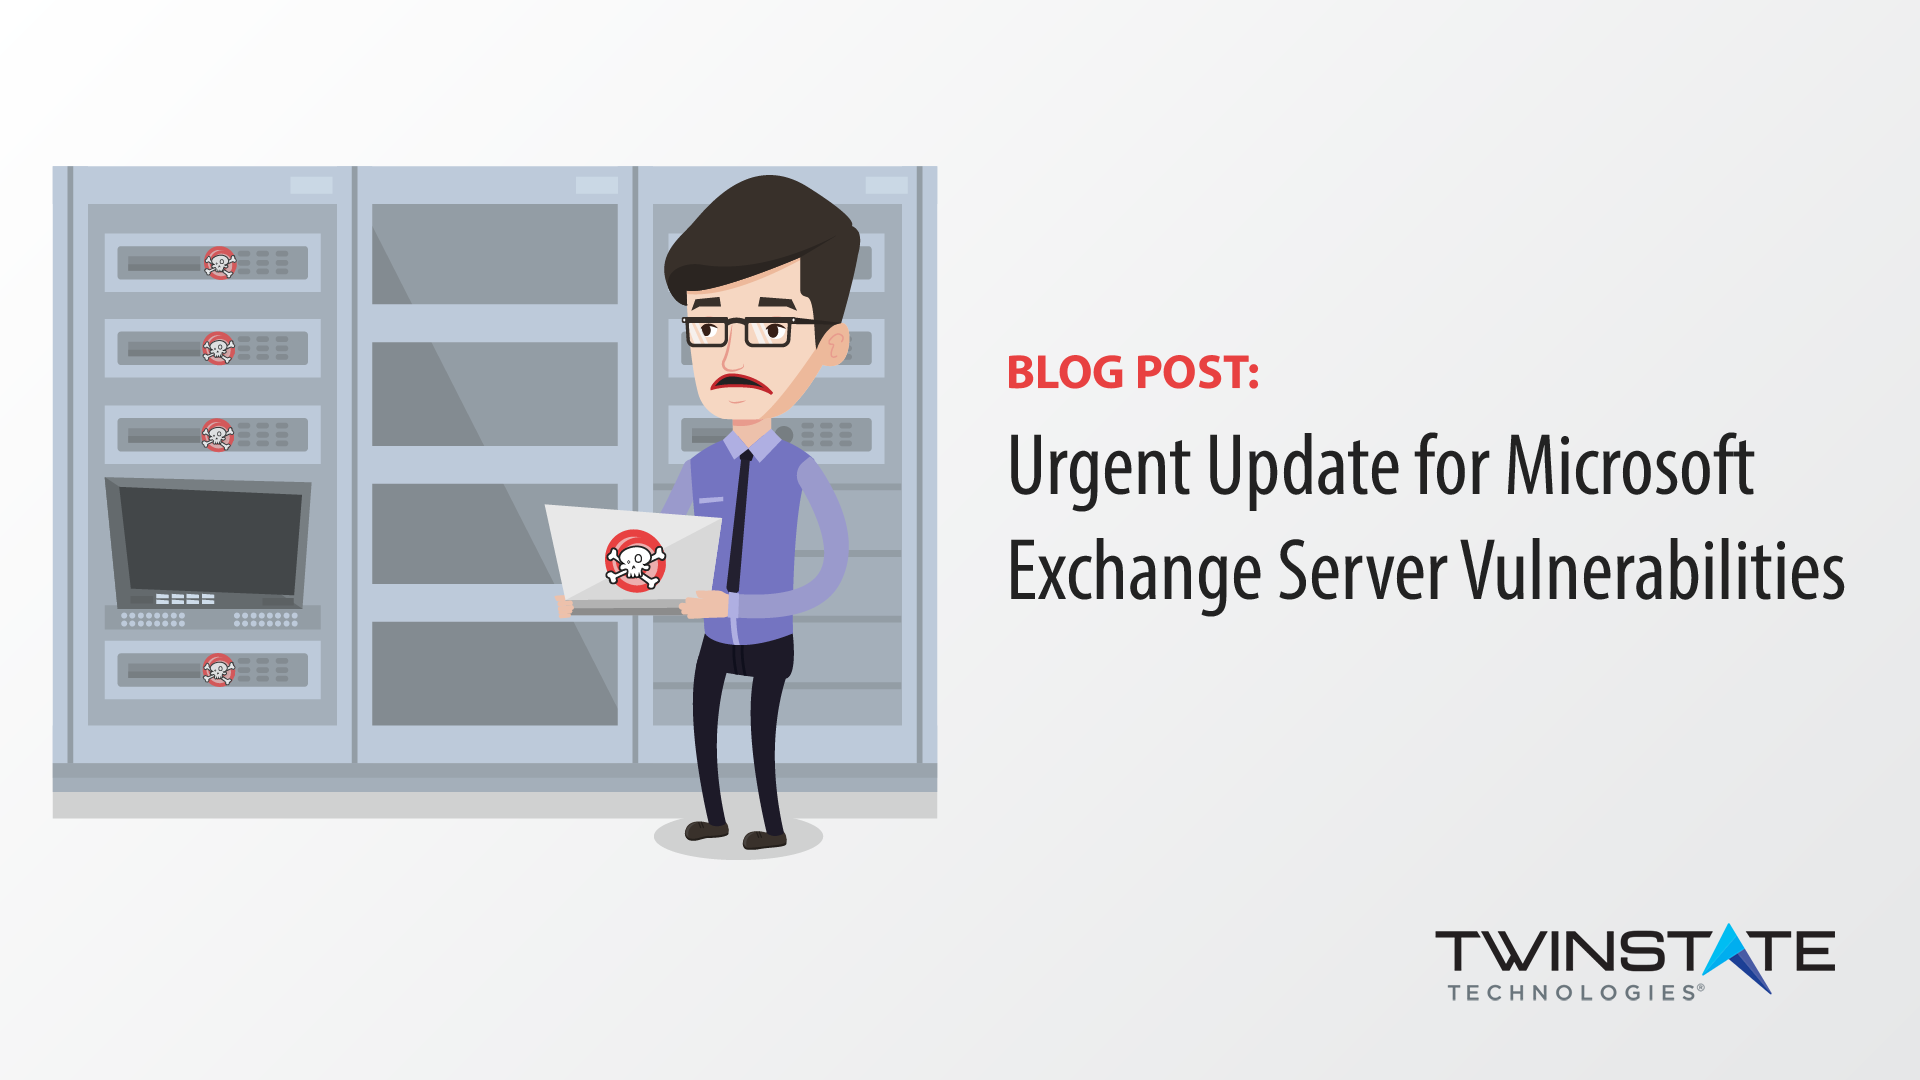 Urgent Update for Microsoft Exchange Server Vulnerabilities